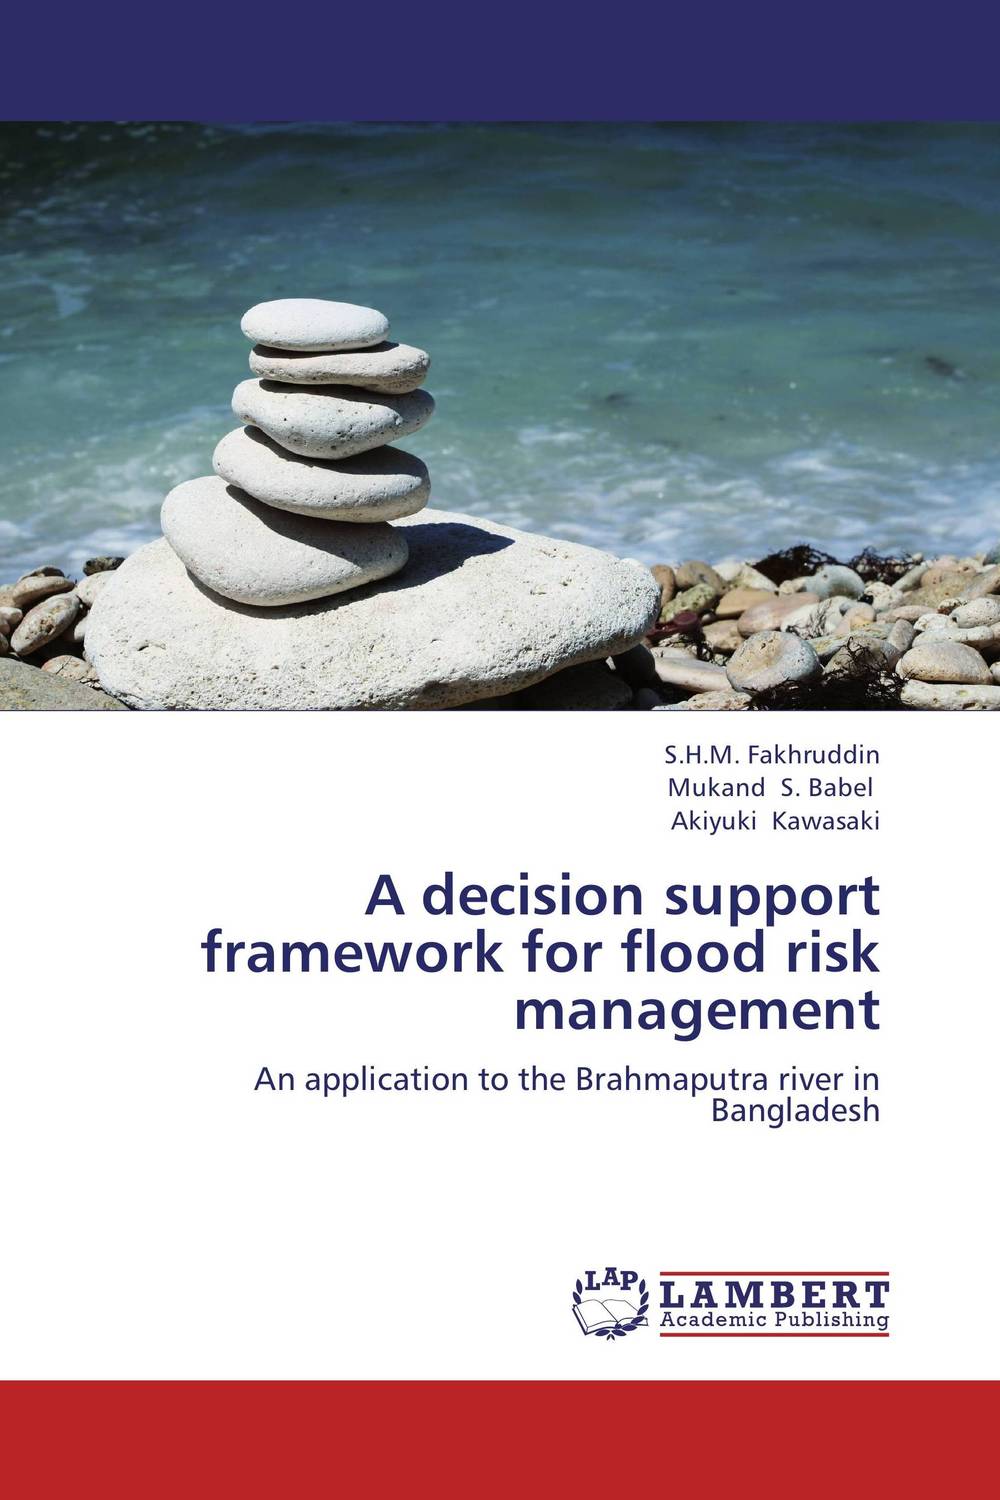 A decision support framework for flood risk management